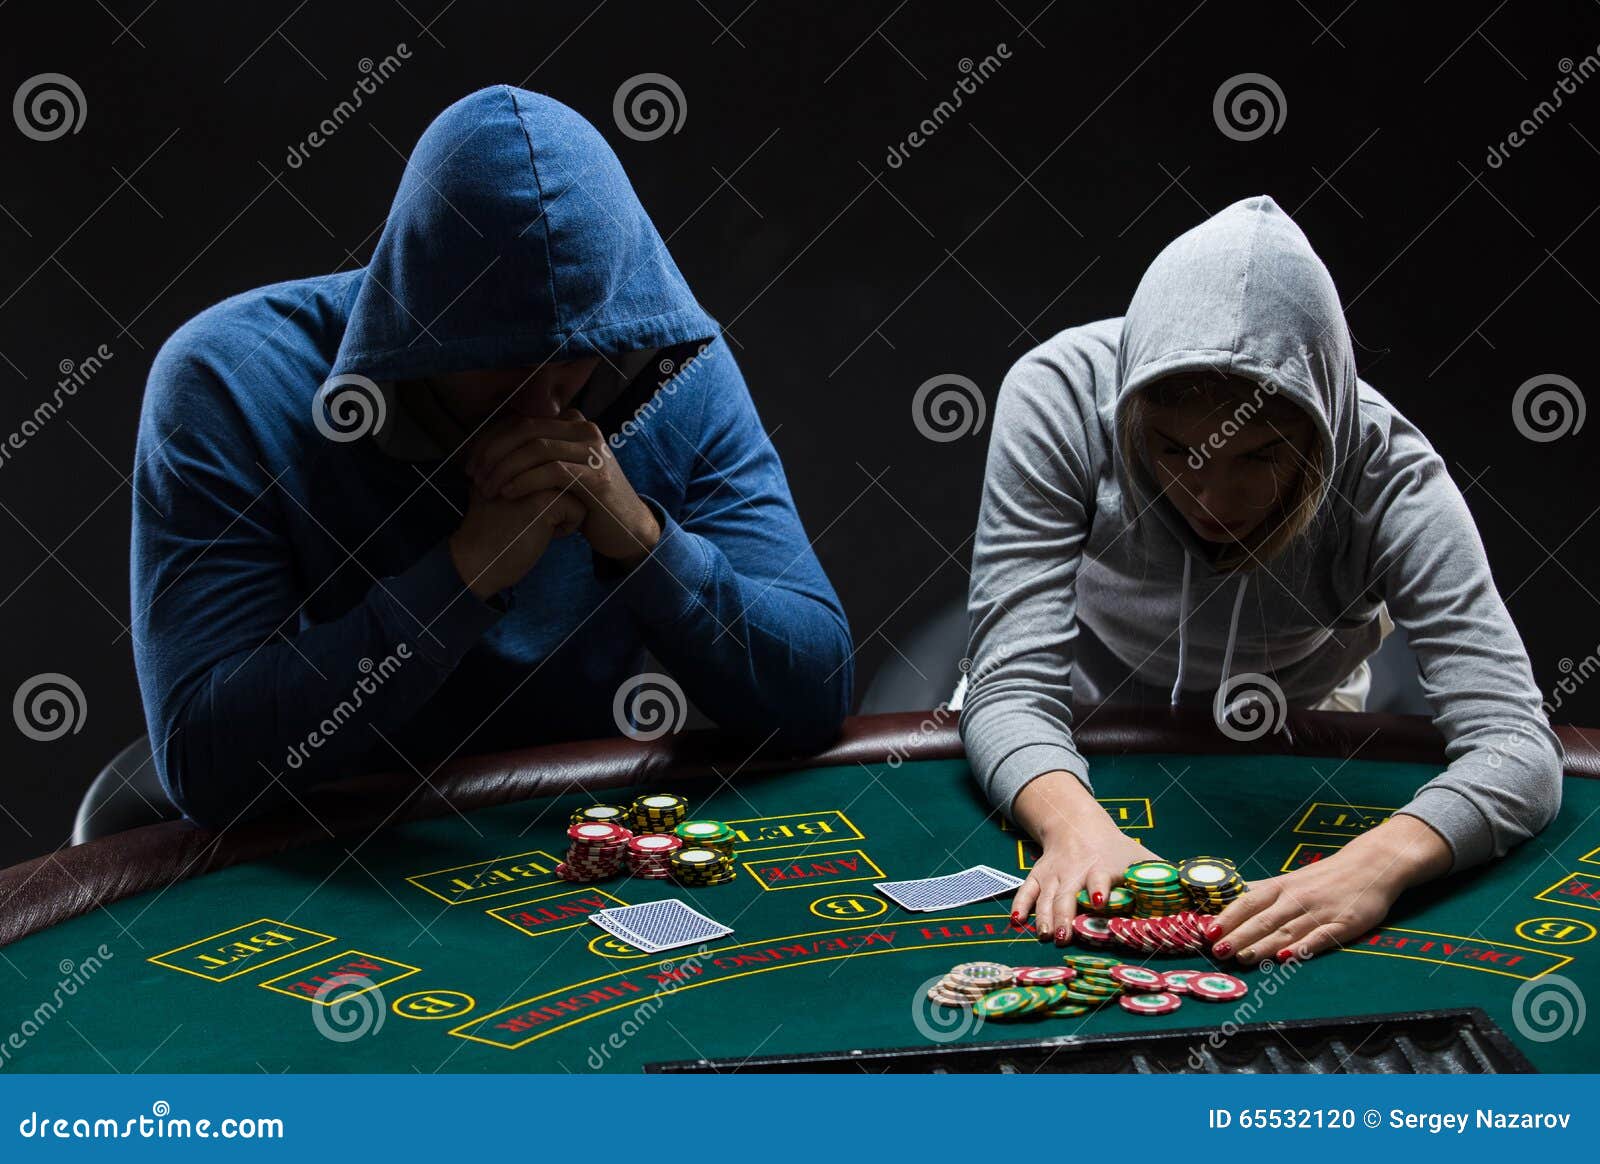 aldemir poker